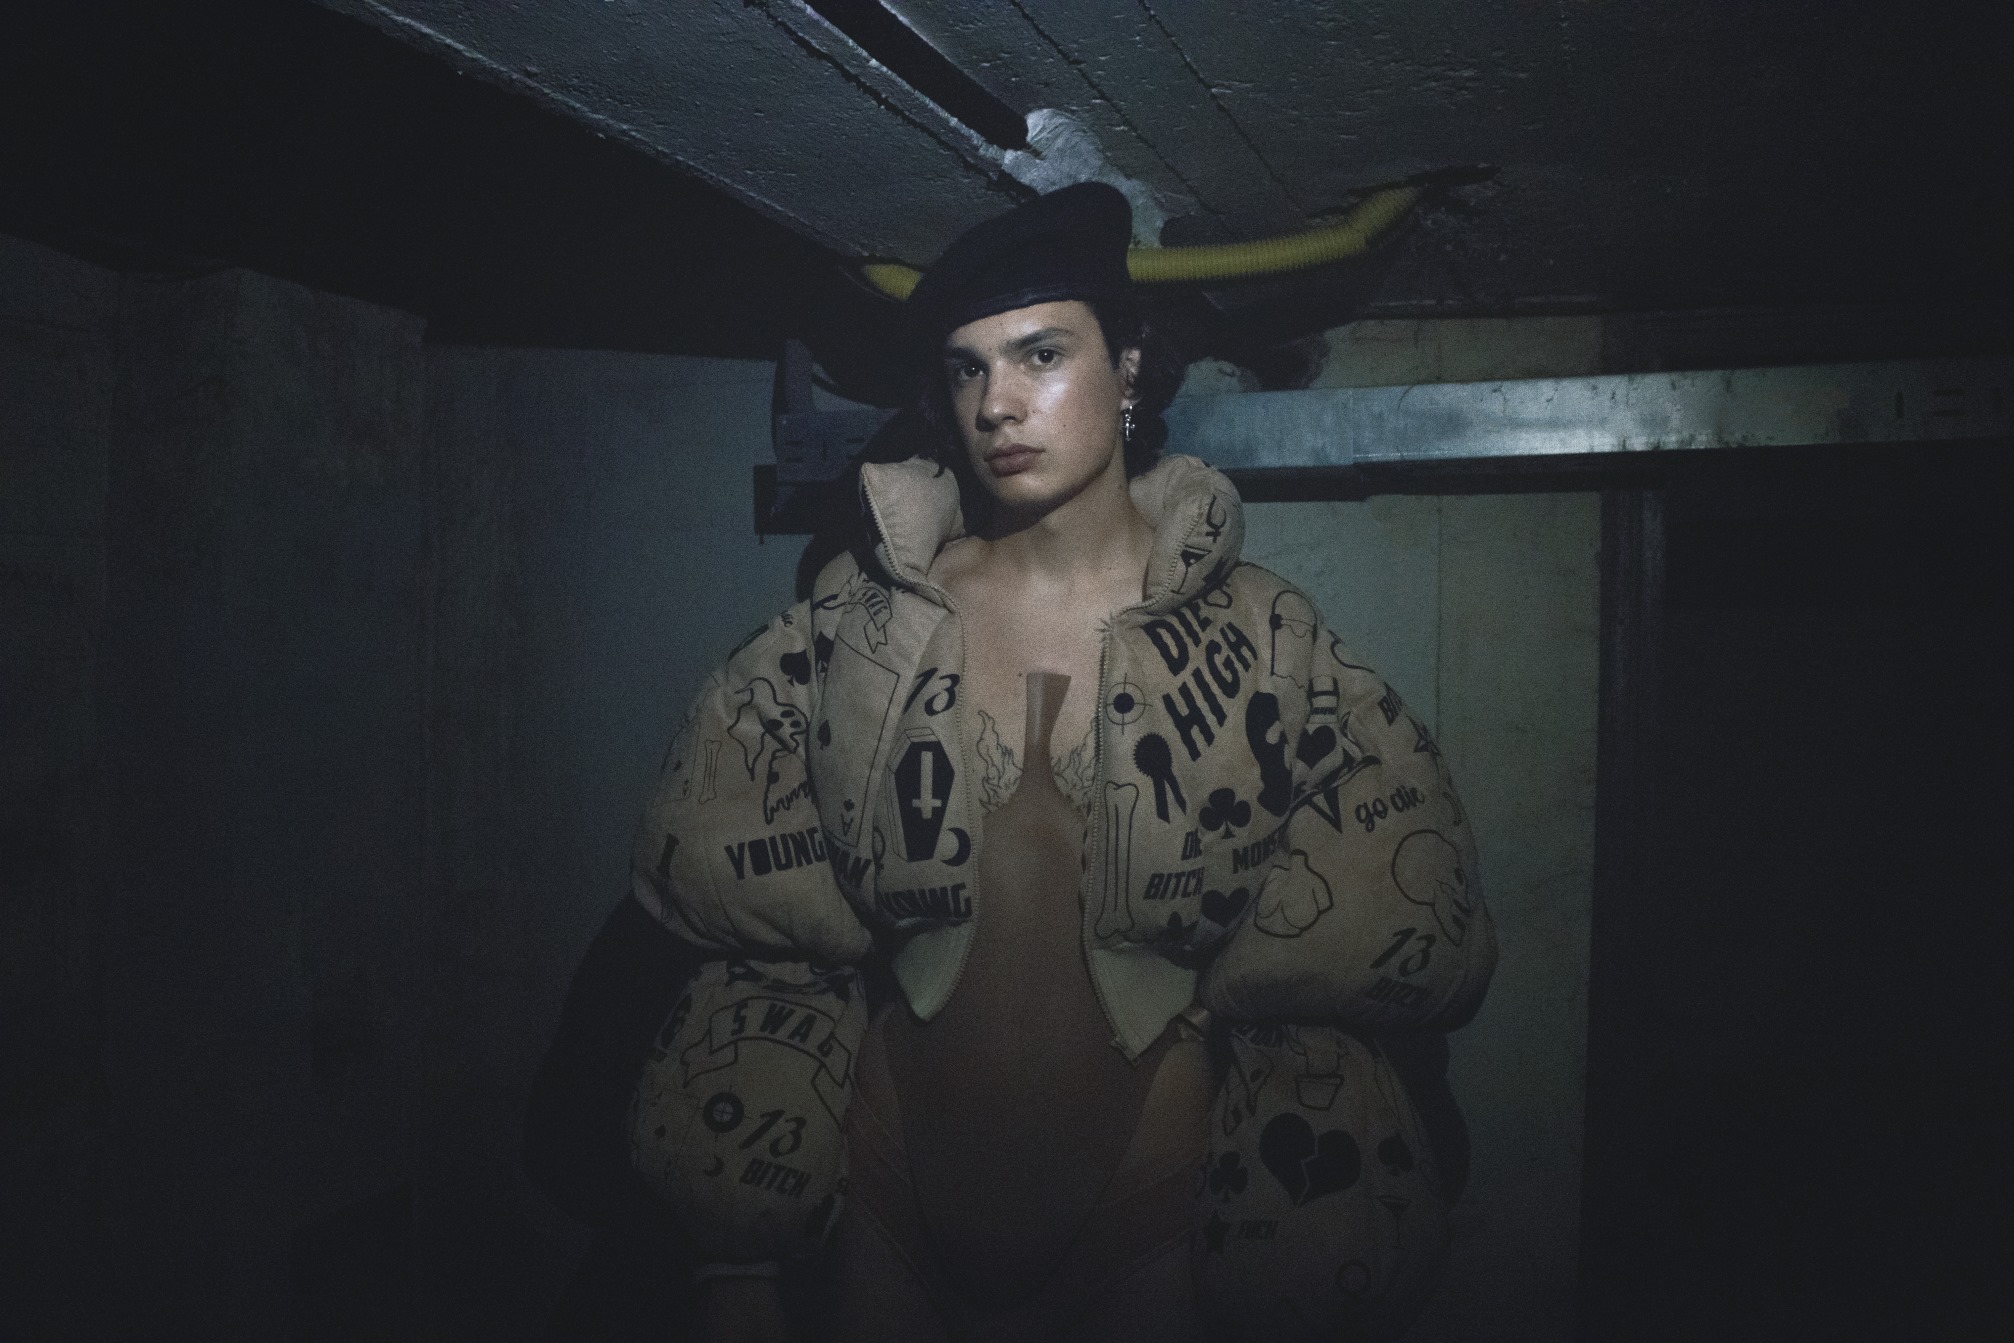 Modni fotograf Donovan Pavleković predstavlja diplomski rad na temu toksičnog maskuliniteta i odnosa prema ženskom tijelu